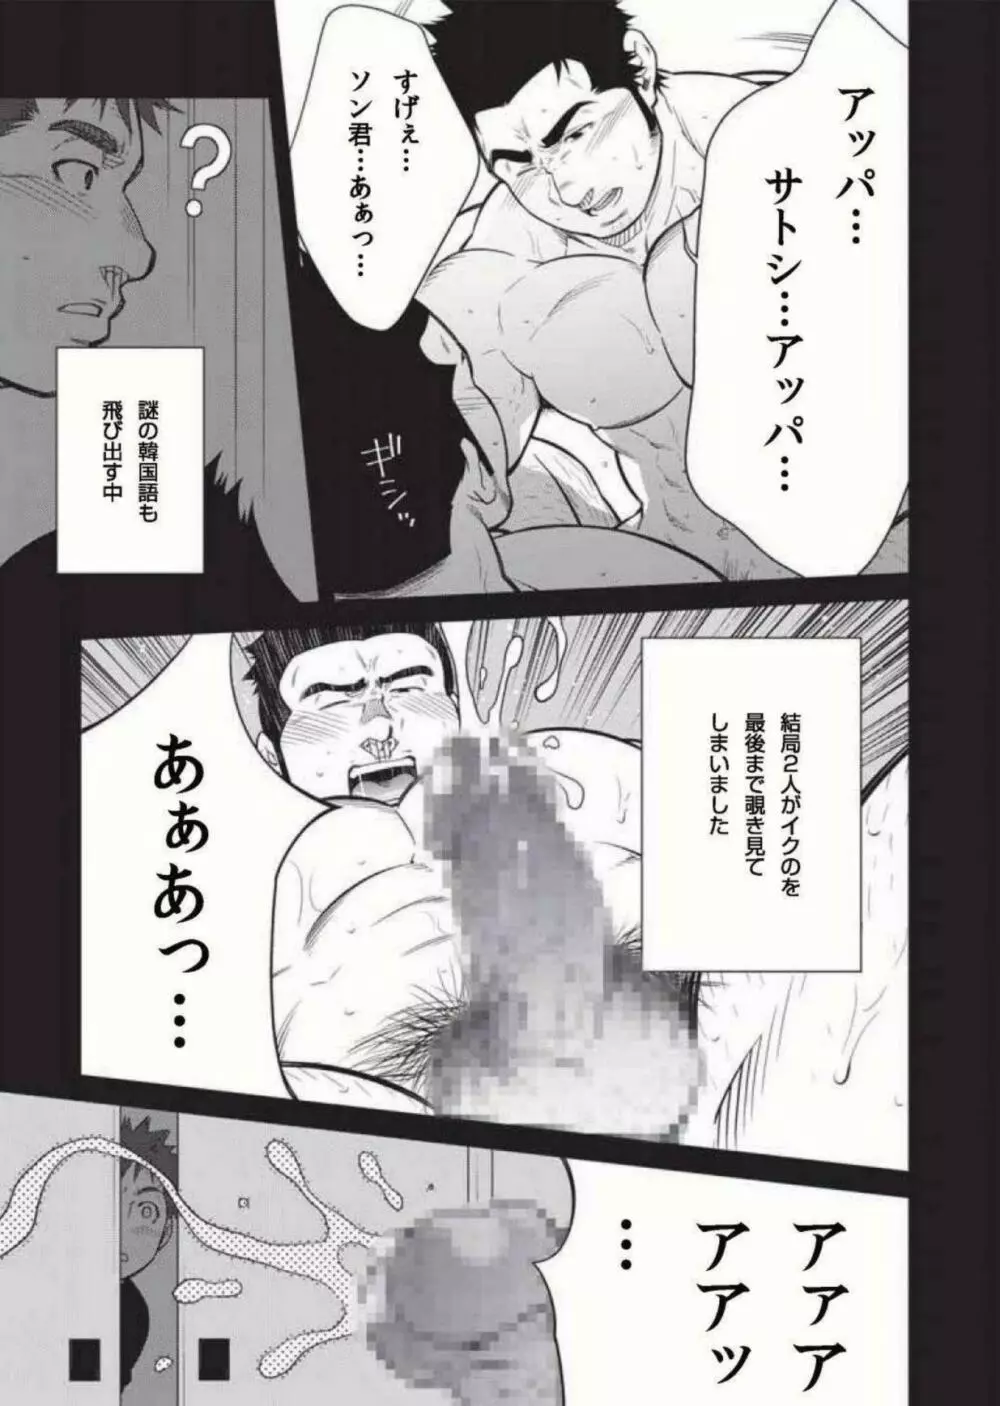 Terujirou - 晃次郎 - Badi Bʌ́di (バディ) 119 (Jan 2016) Page.7